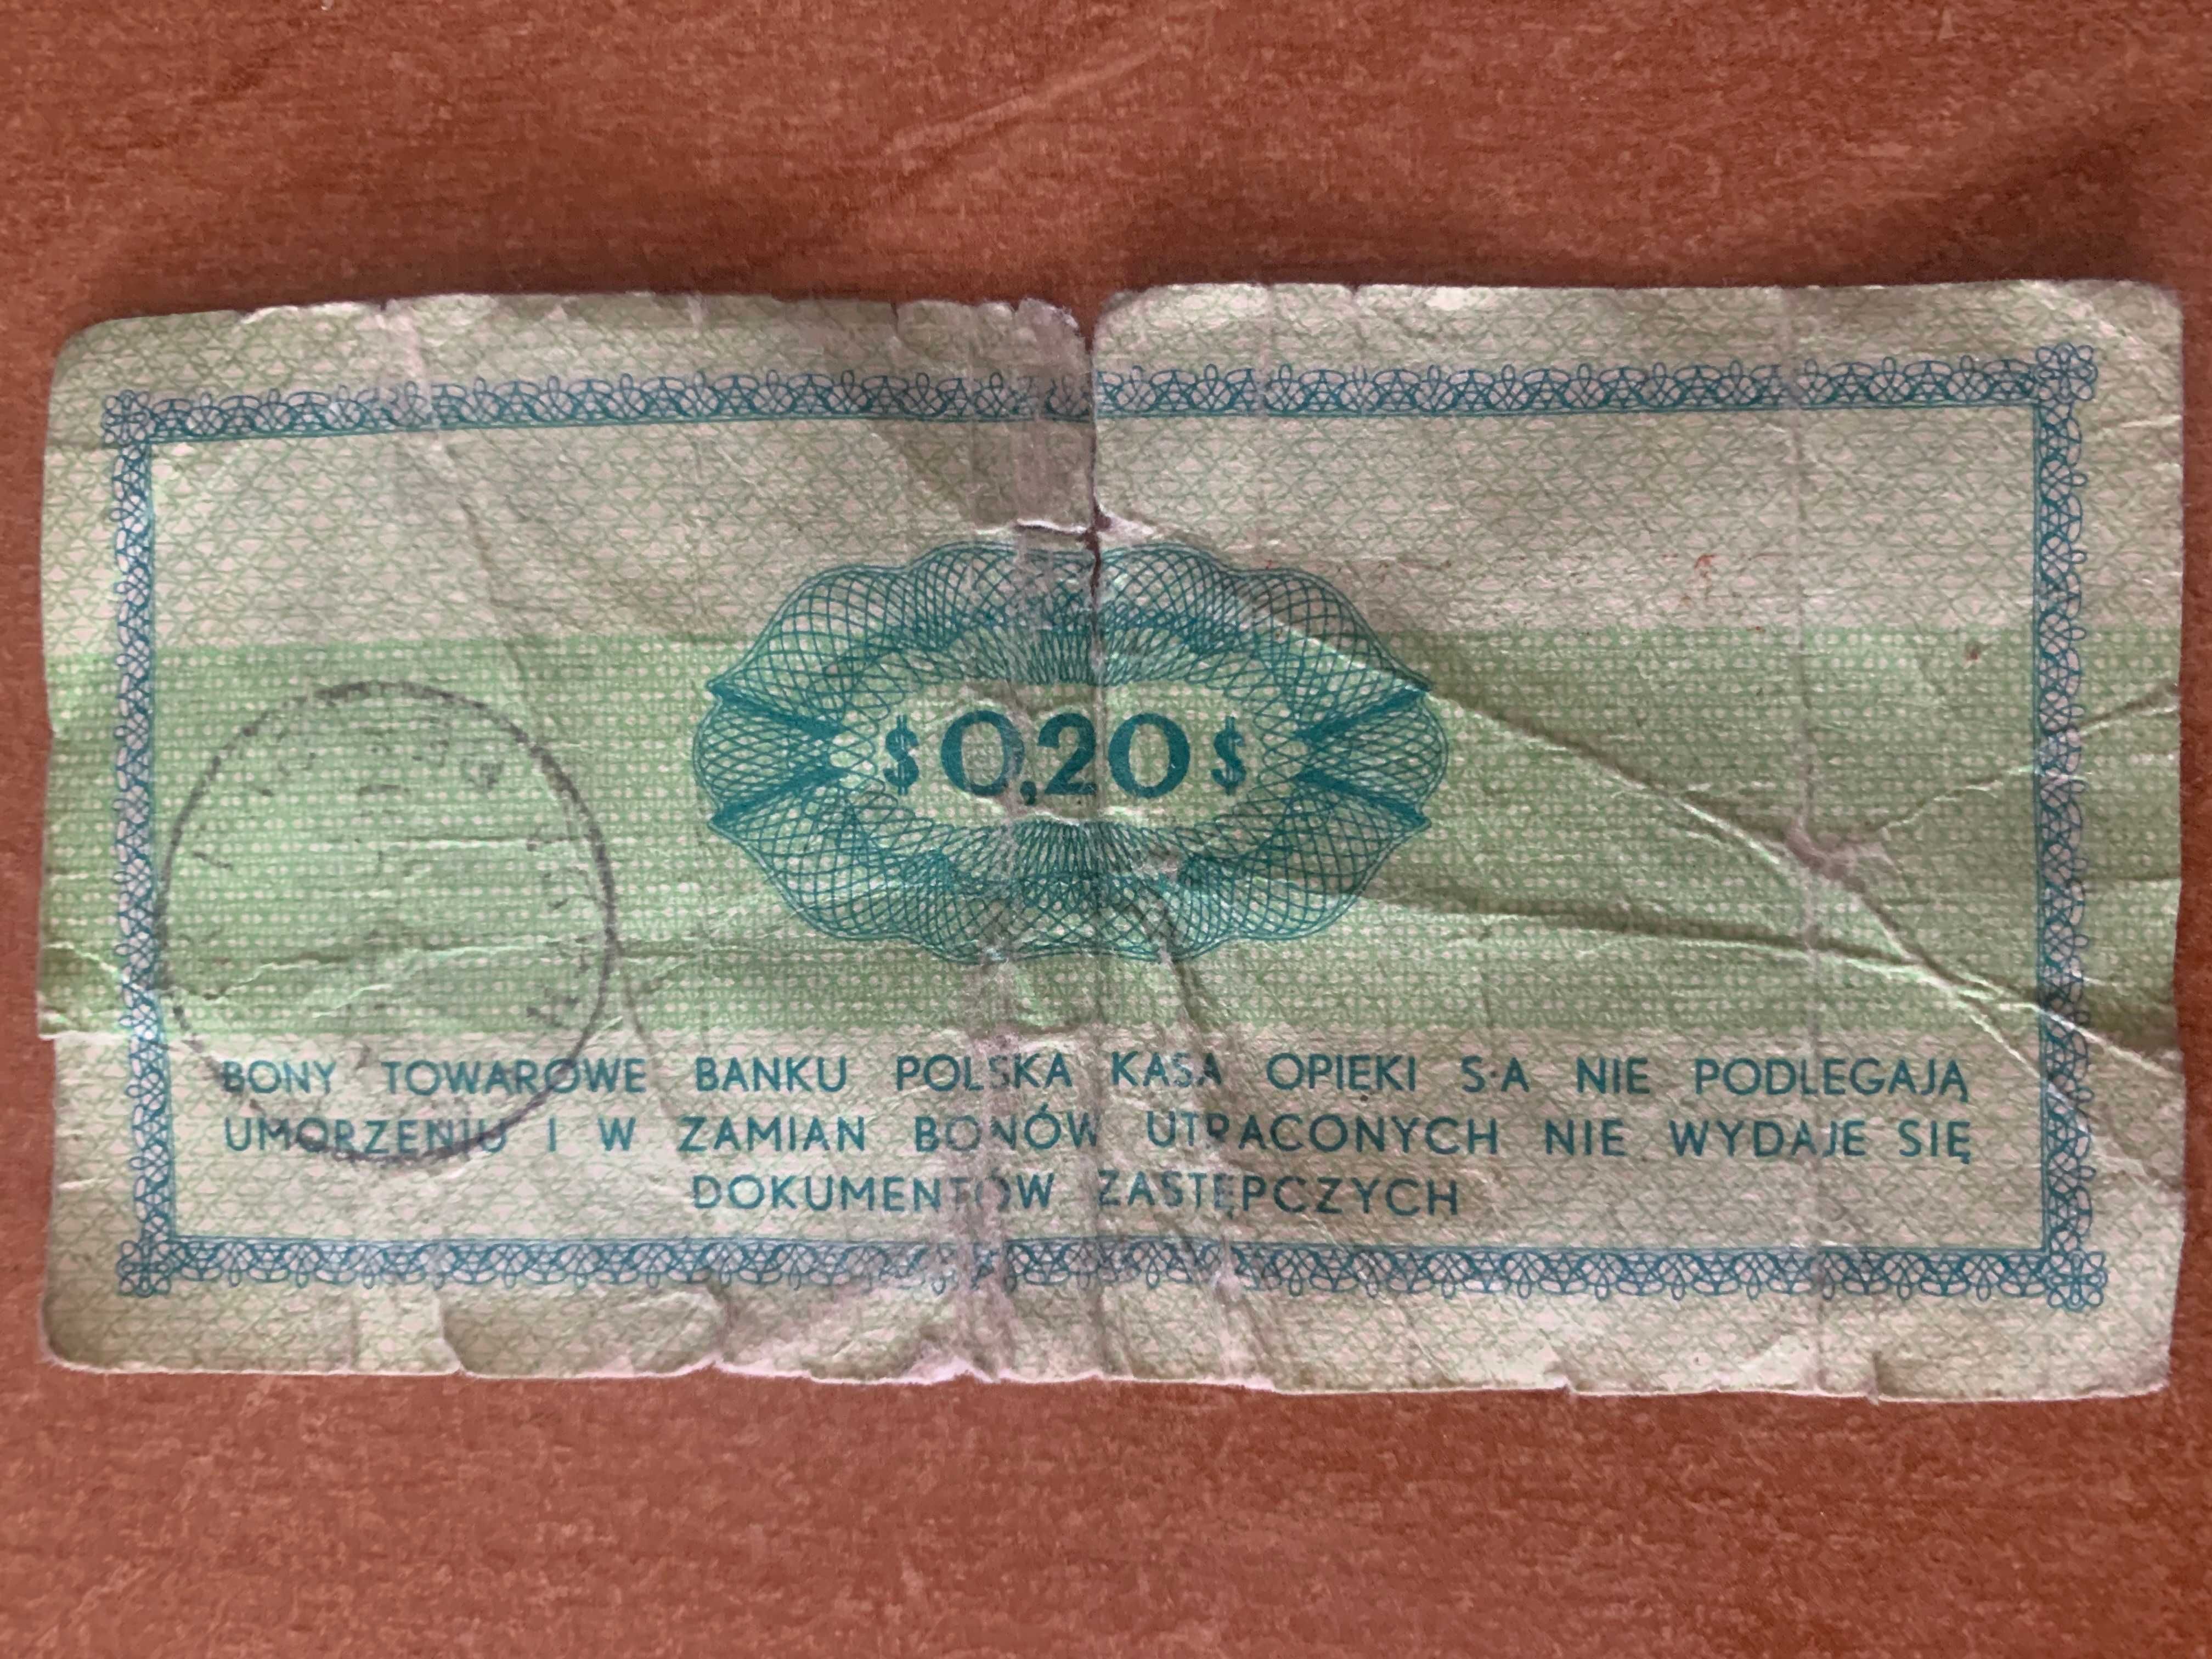 Bon towarowy Pekao 20 centów 1969 rok